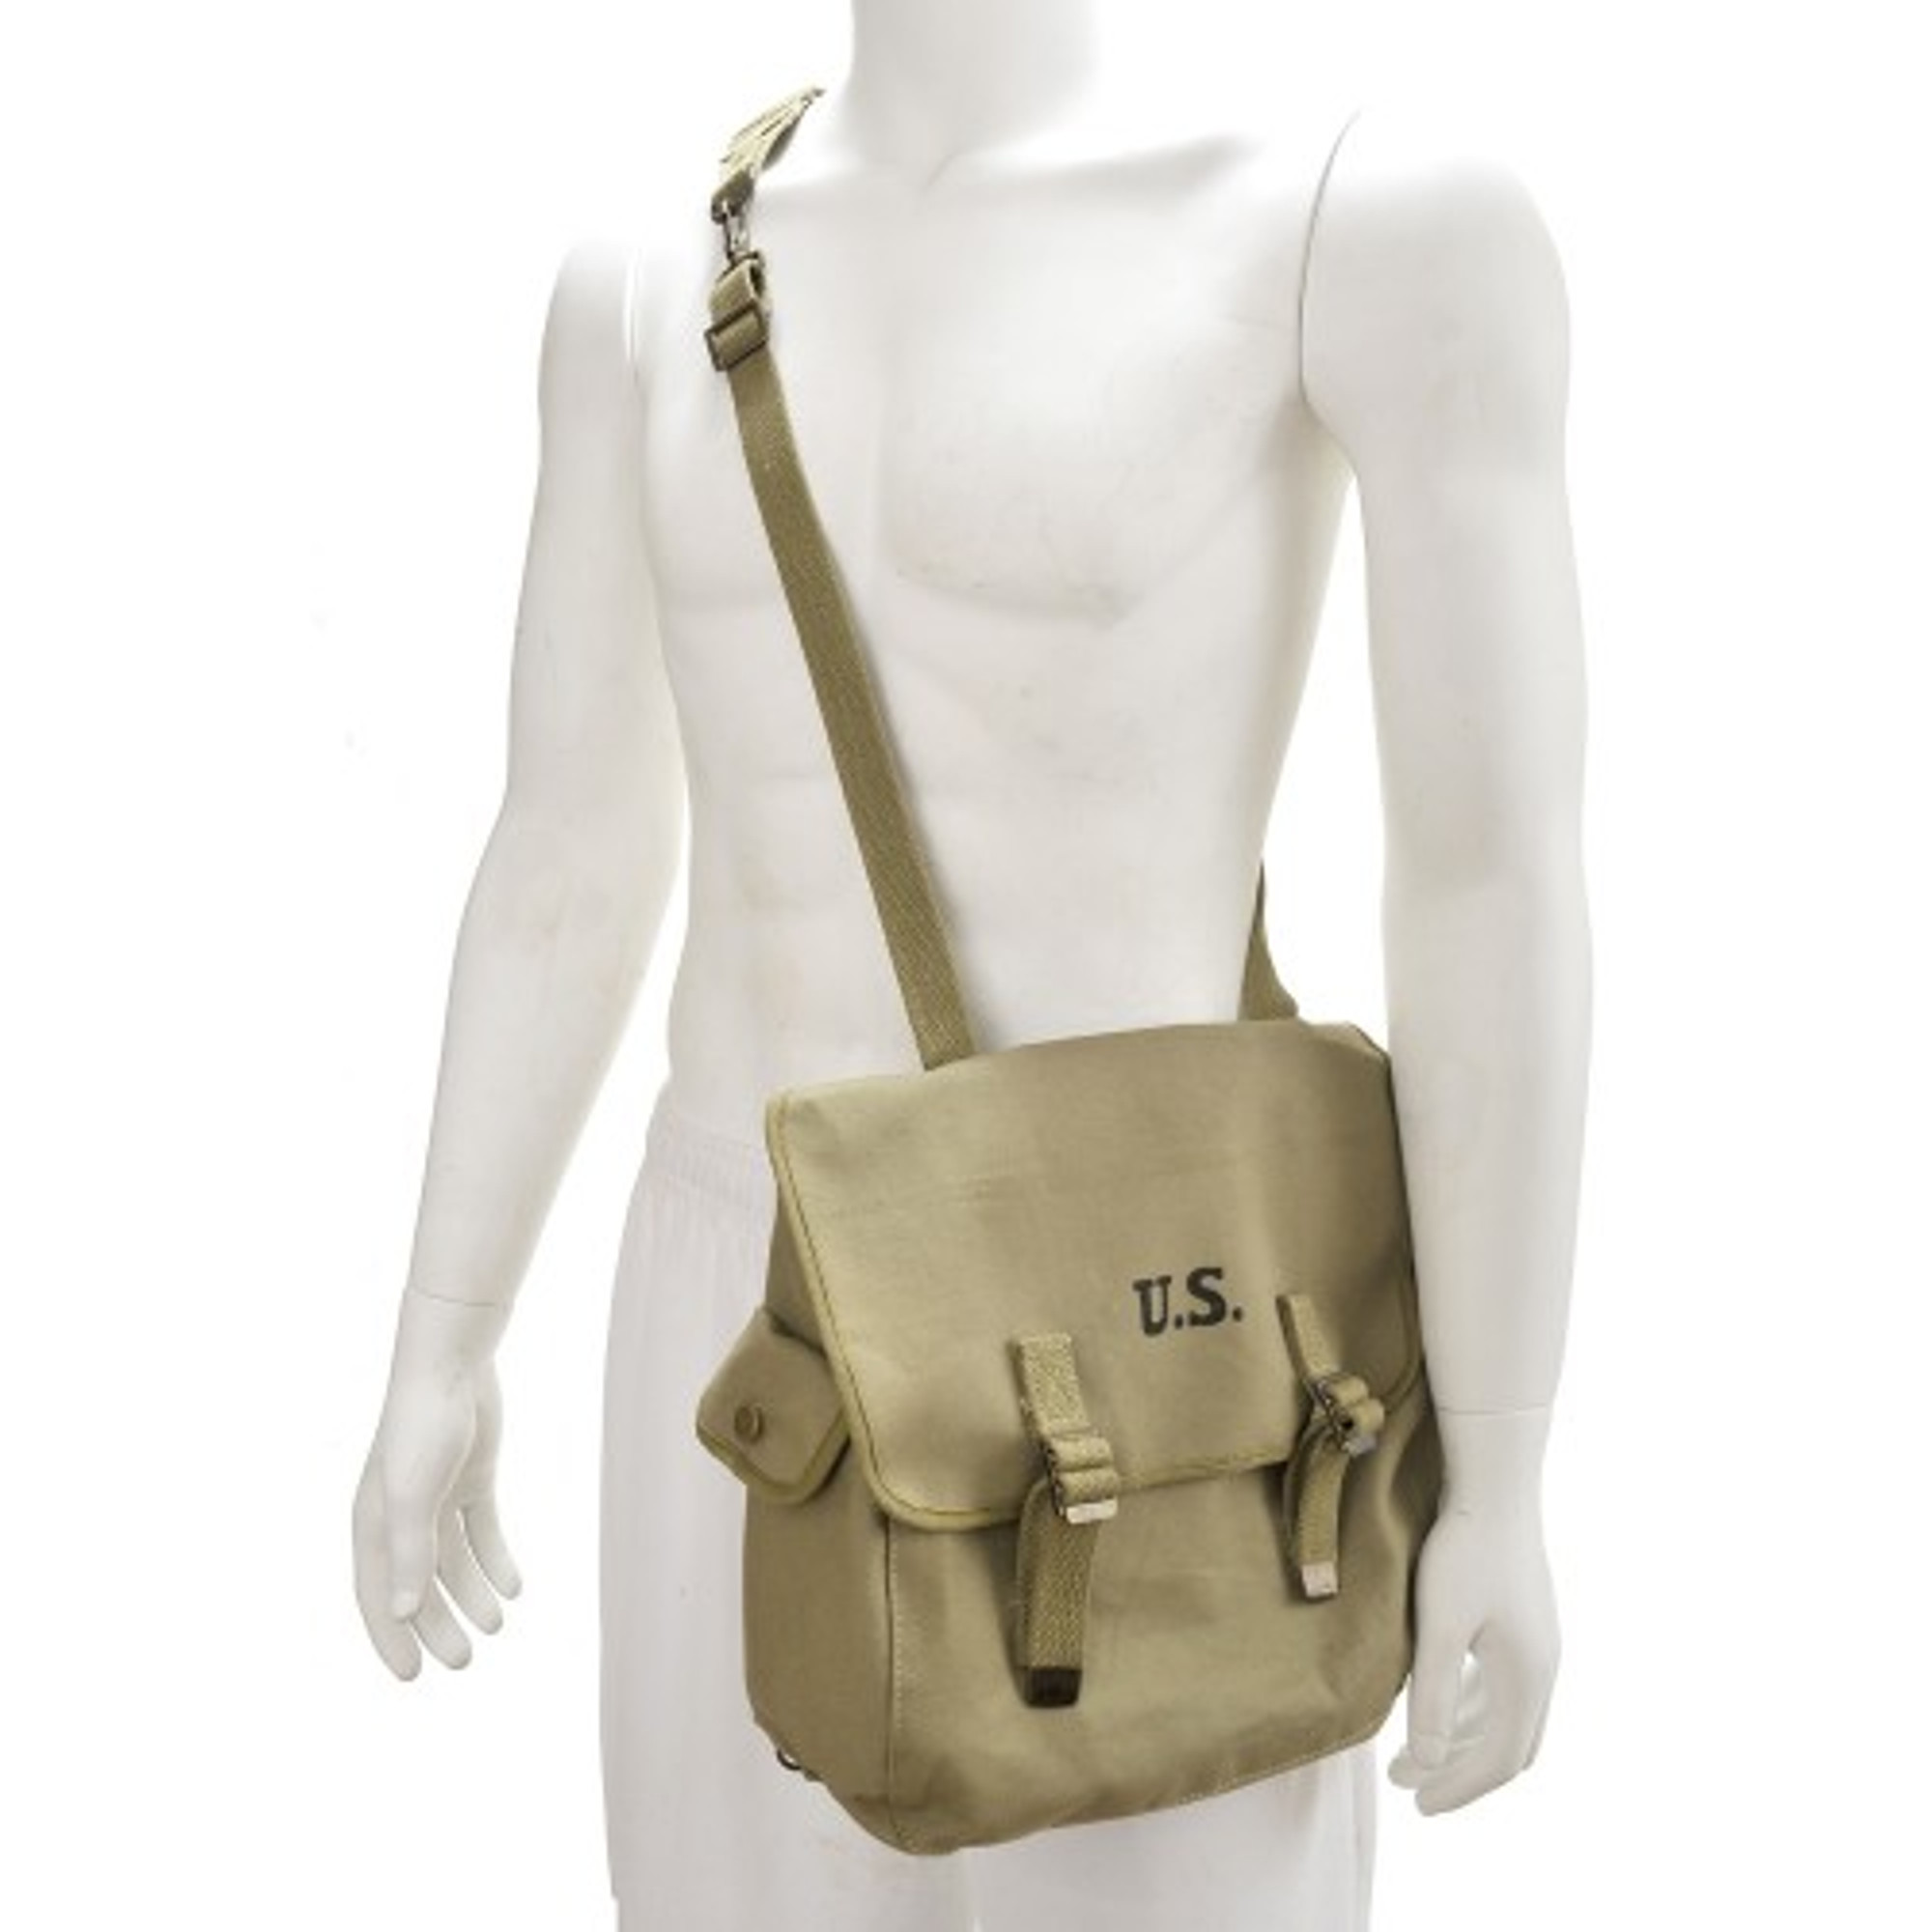 U.S. WW2 M1936 Musette Bag w/Shoulder Strap Marked JT&L 1943 - Light OD